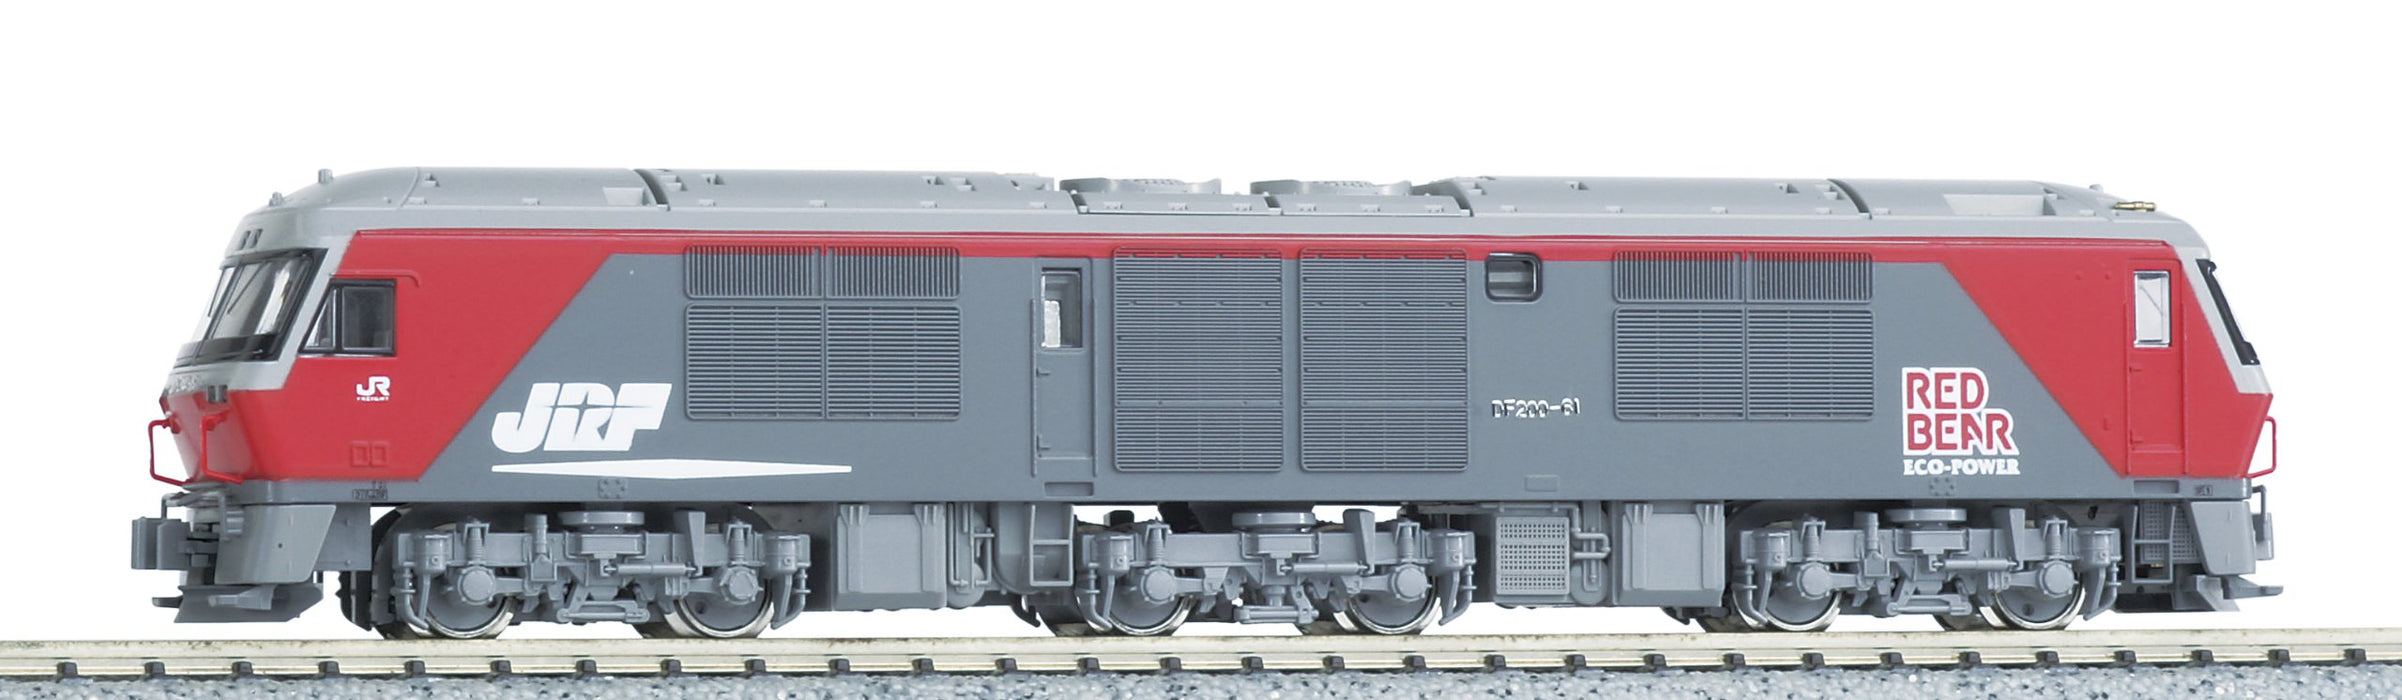 Kato N Gauge Df200 50S Diesel Locomotive Railway Model 7007-2